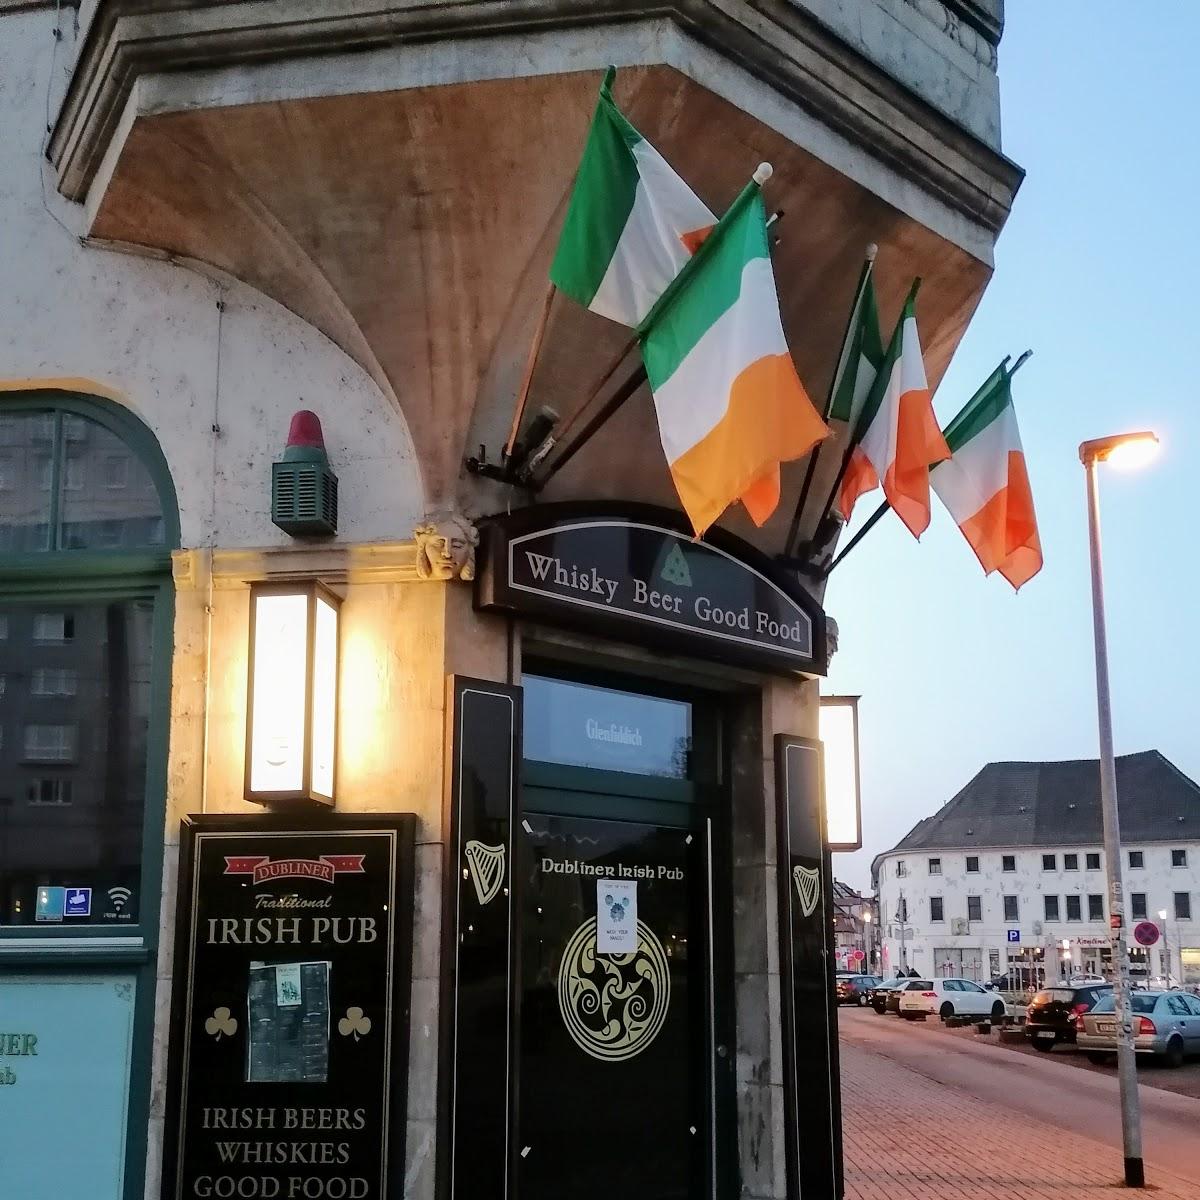 Restaurant "Dubliner Irish Pub" in Erfurt